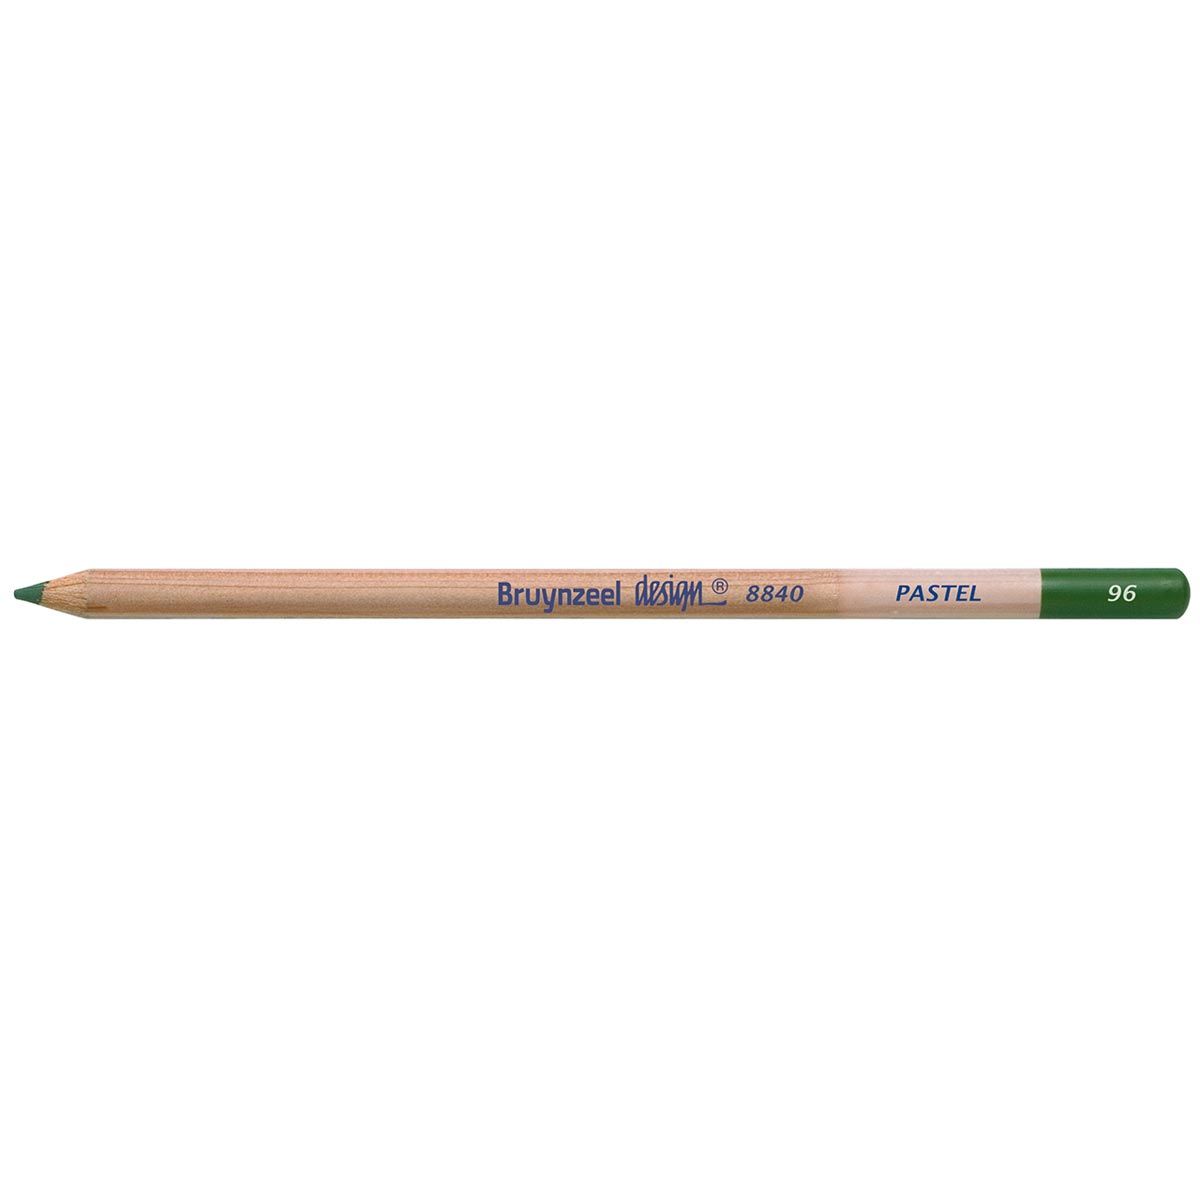 Bruynzeel Design Pastel Pencil - Sap Green 96